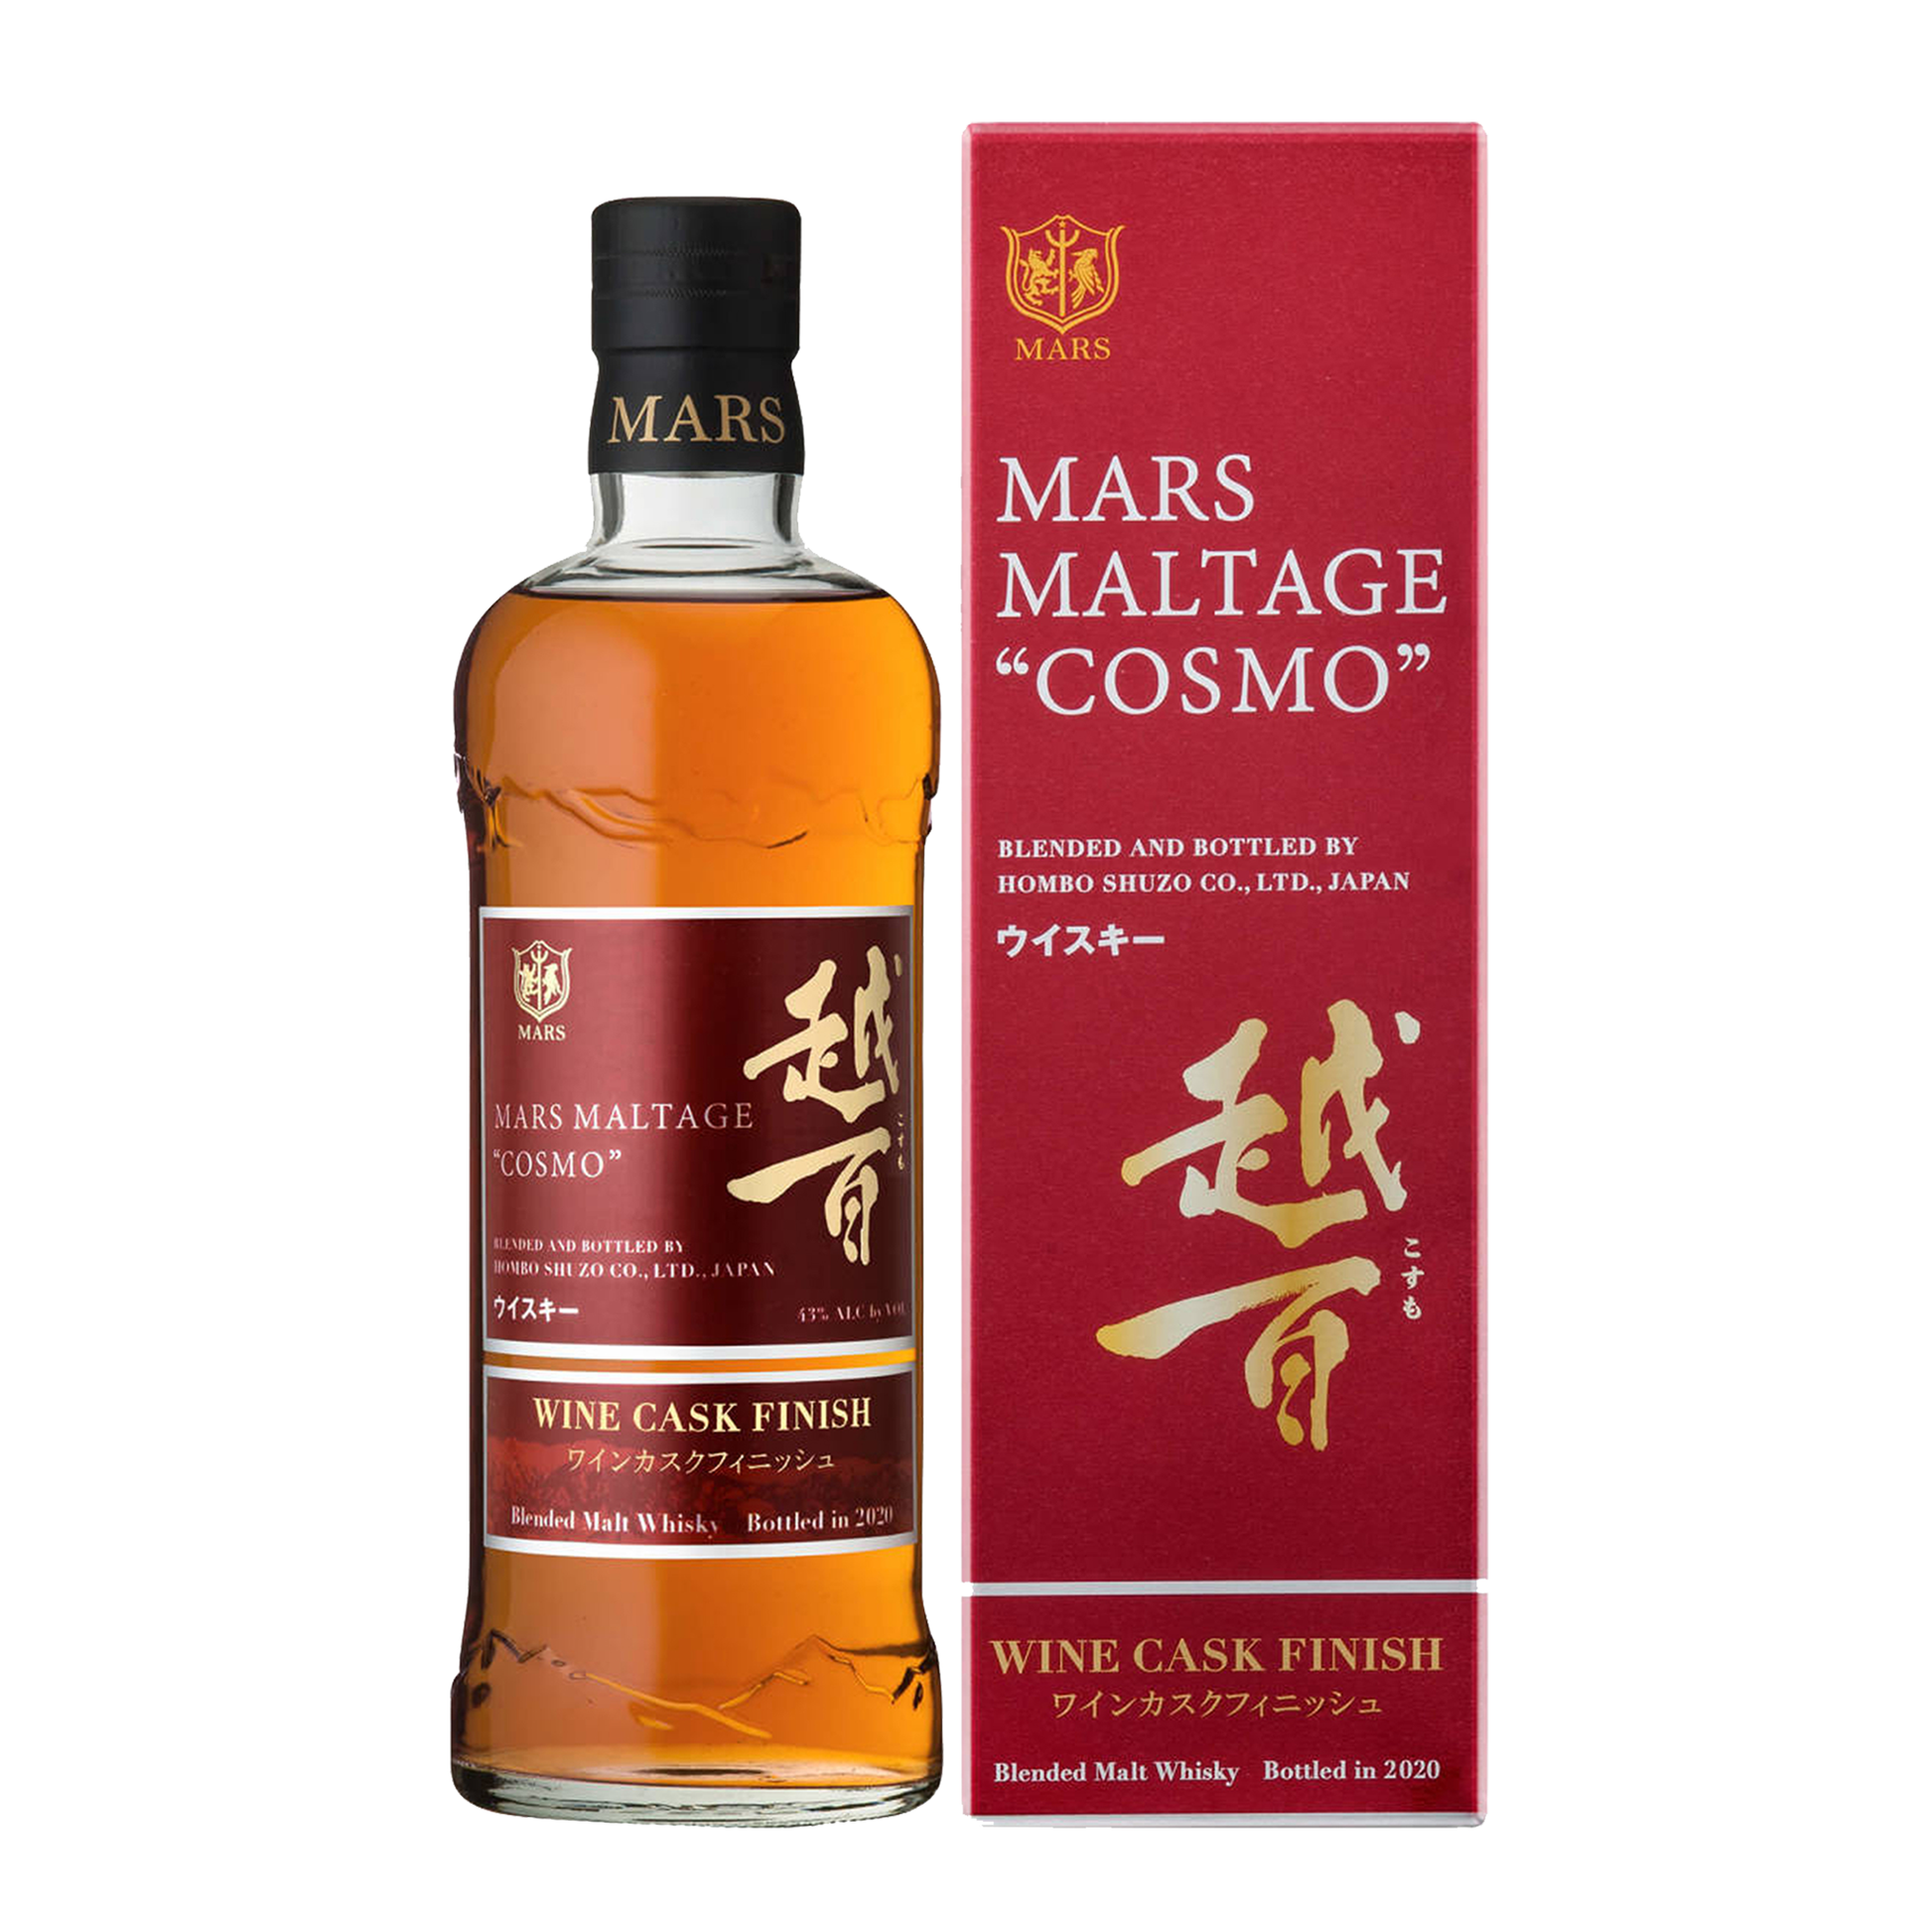 Mars Maltage Cosmo Wine Cask Finish Blended Japanese Whisky 700ml (2020 Bottling) - CBD Cellars